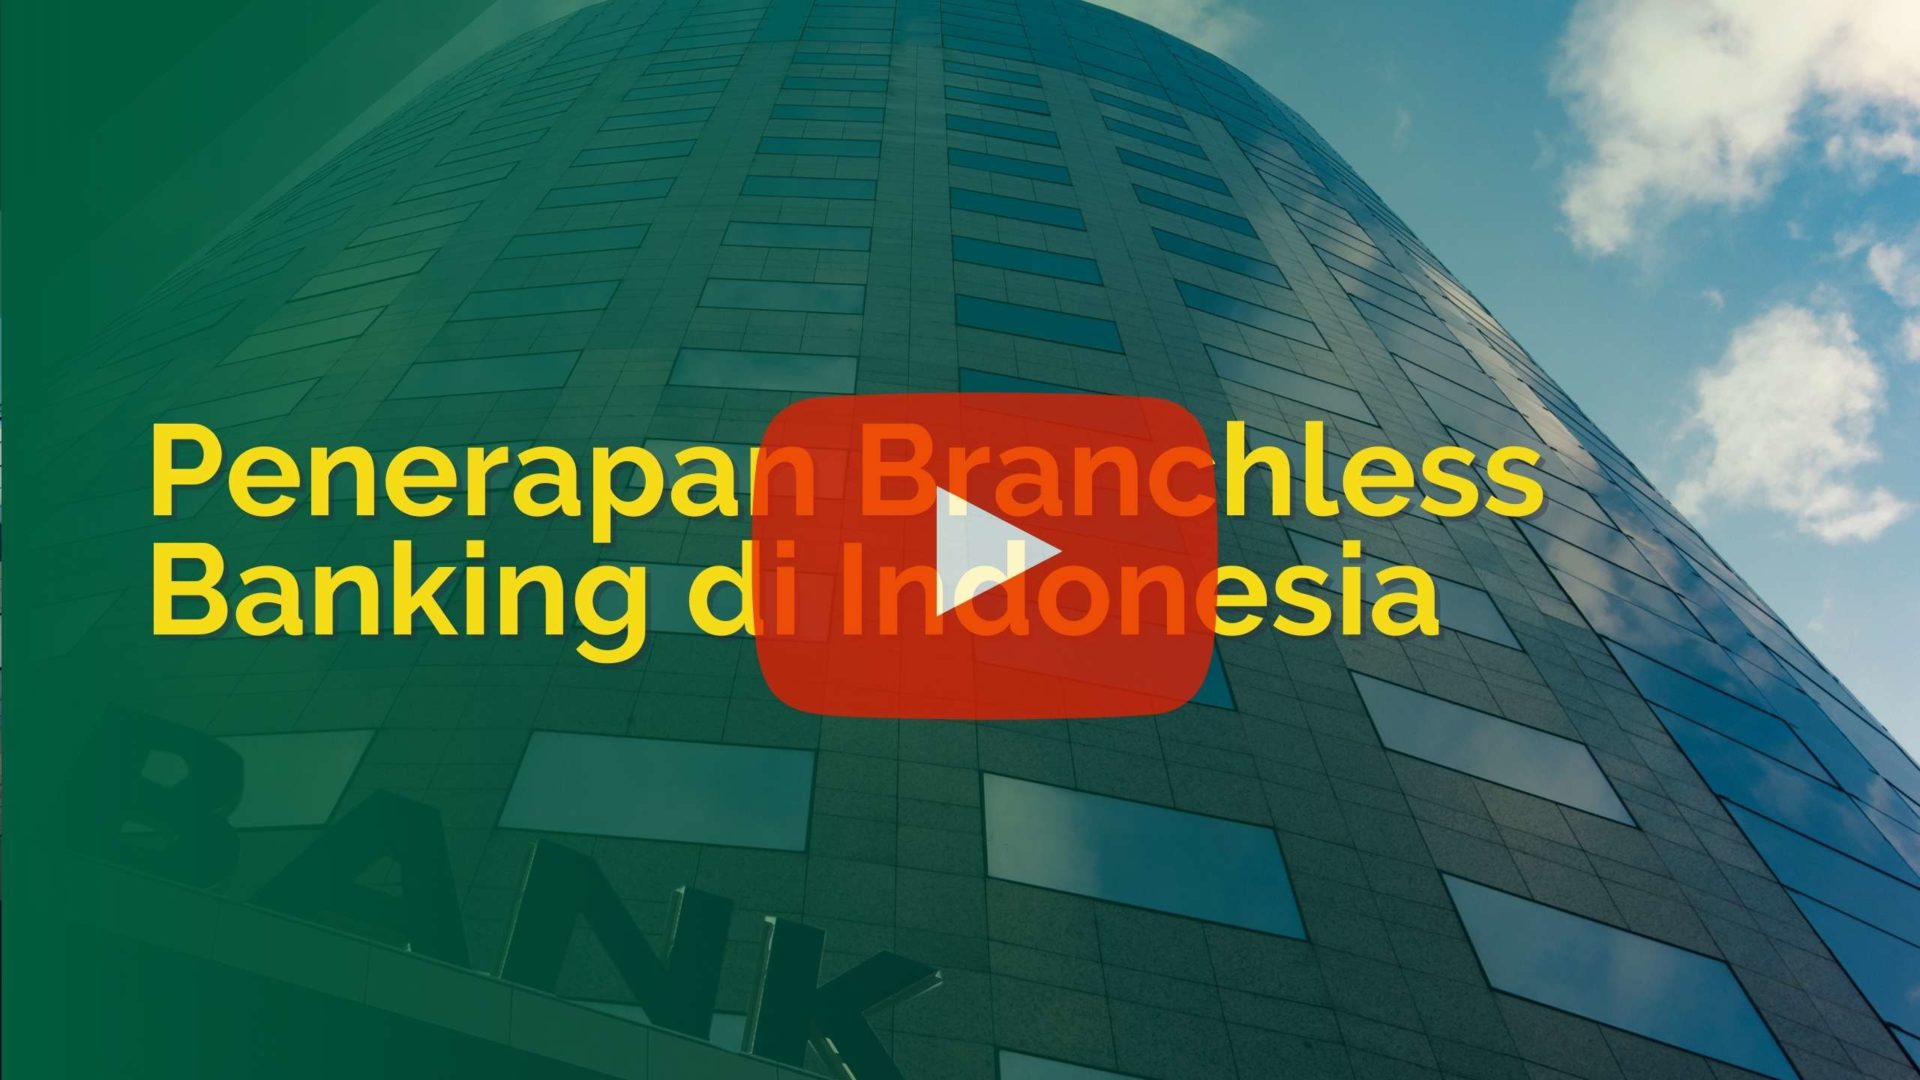 Penerapan Branchless Banking di Indonesia